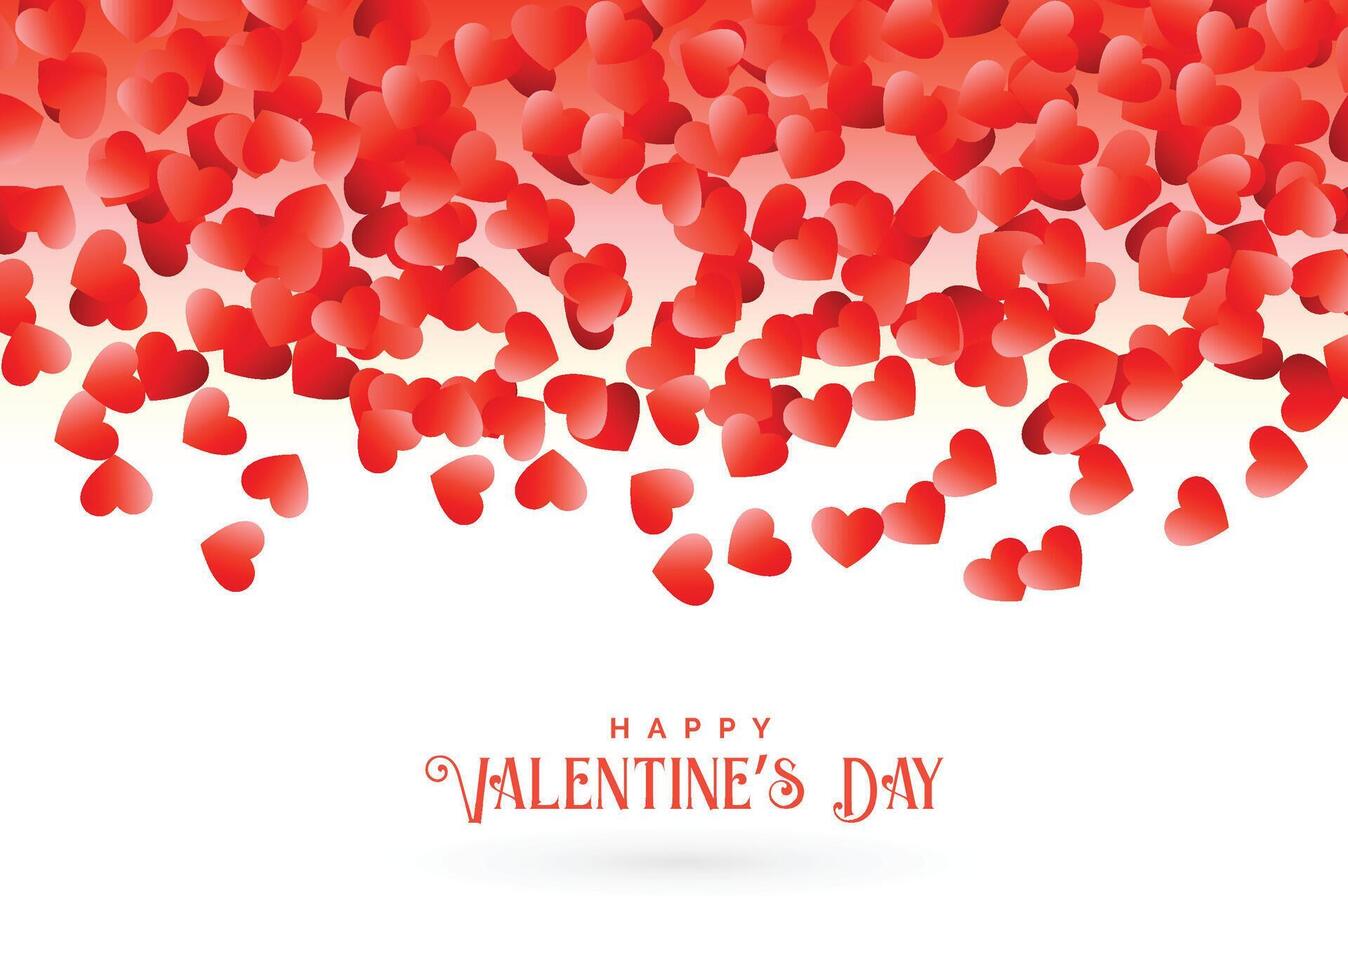 contento San Valentín día saludo tarjeta diseño con que cae rojo corazones vector